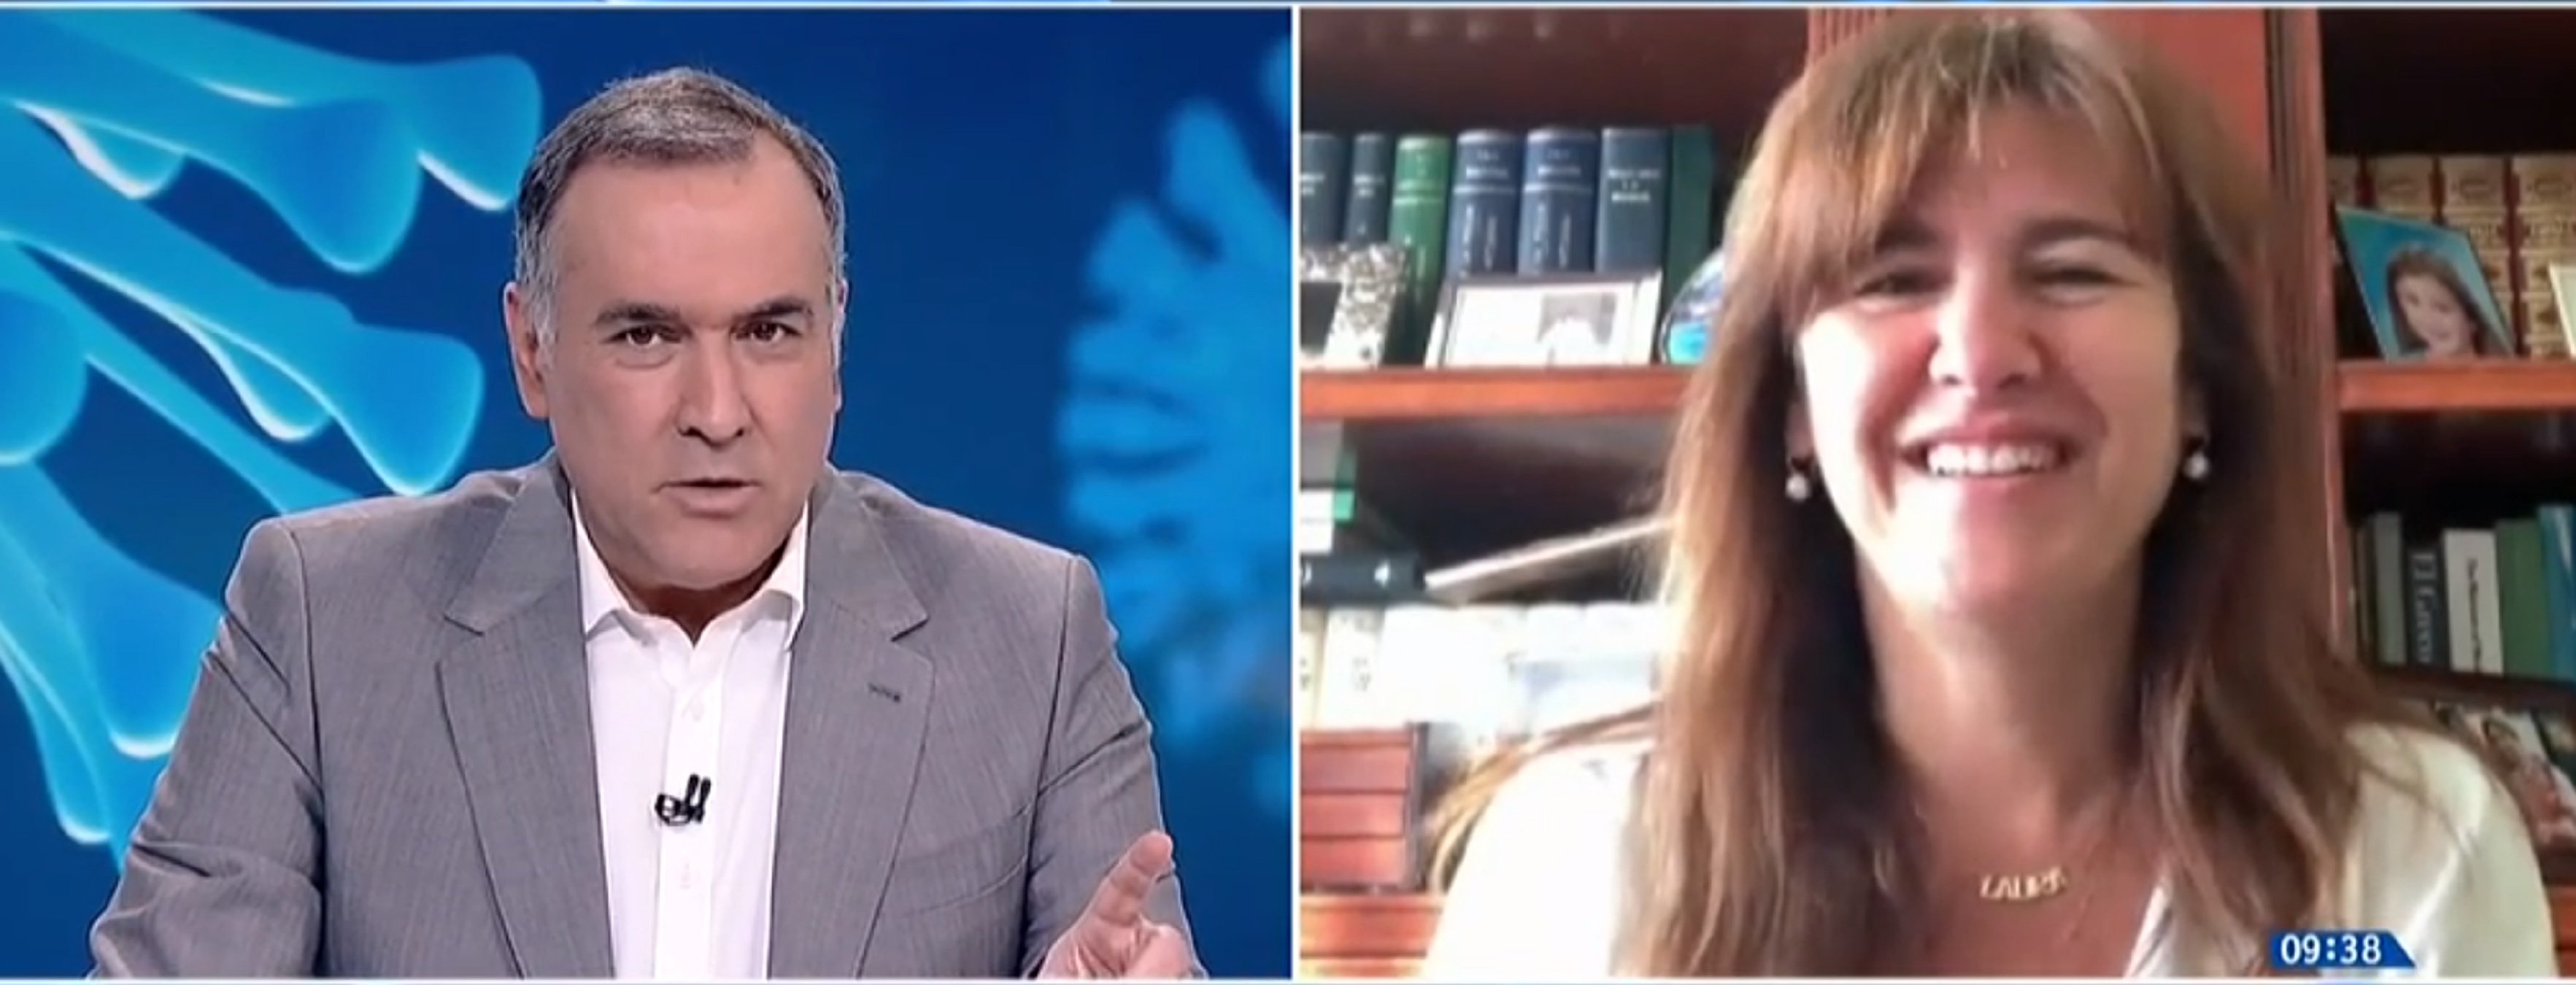 Laura Borràs hunde a Felipe VI en TVE y la cadena lo censura y lame a la Corona